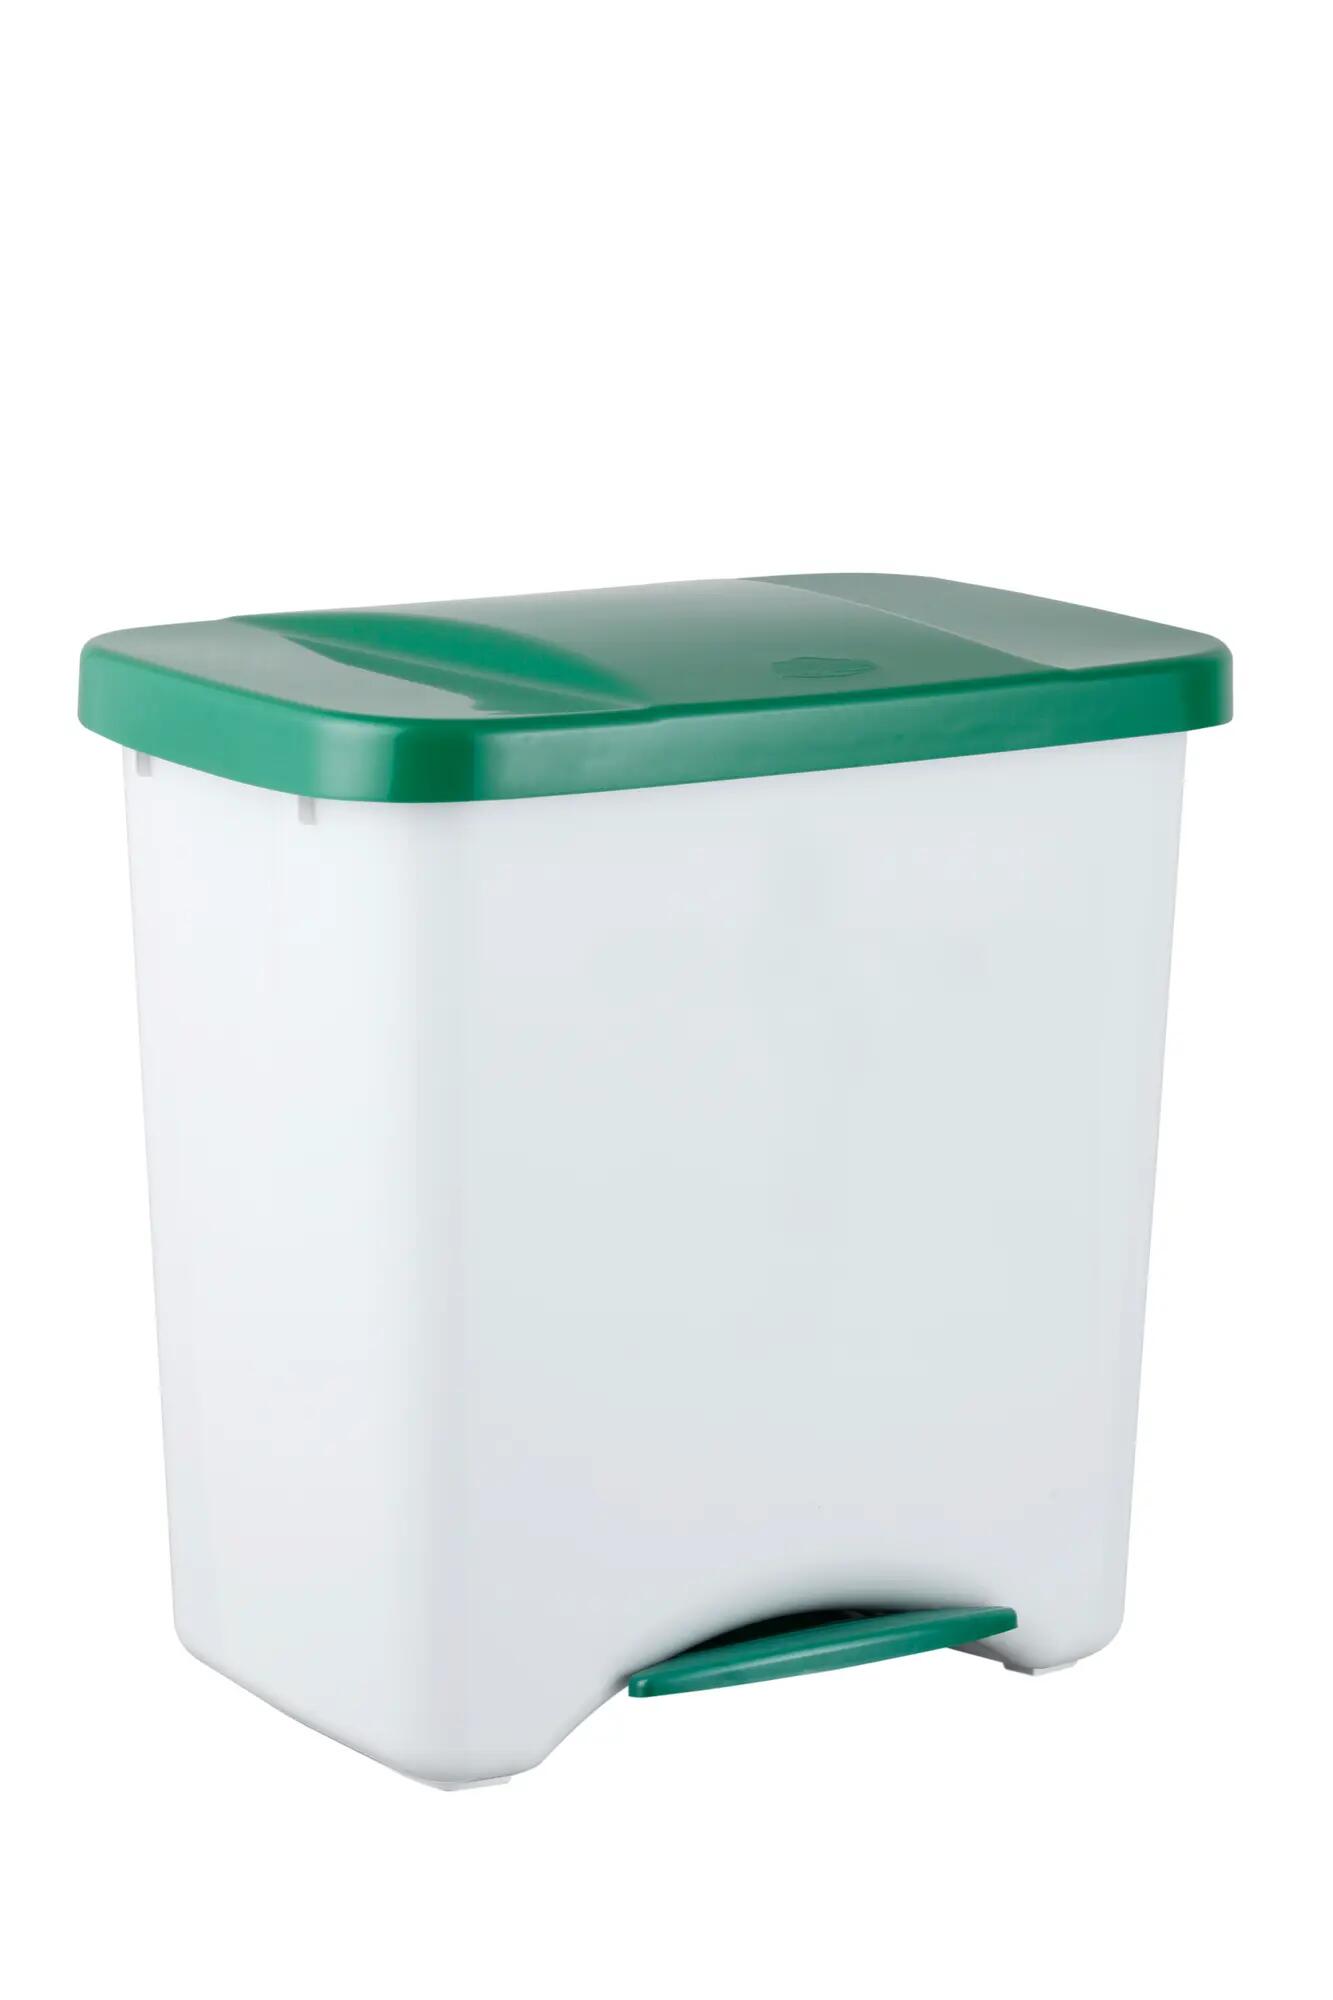 Caixote Lixo Ecoponto Com 3 Divisórias 50 L PETEX